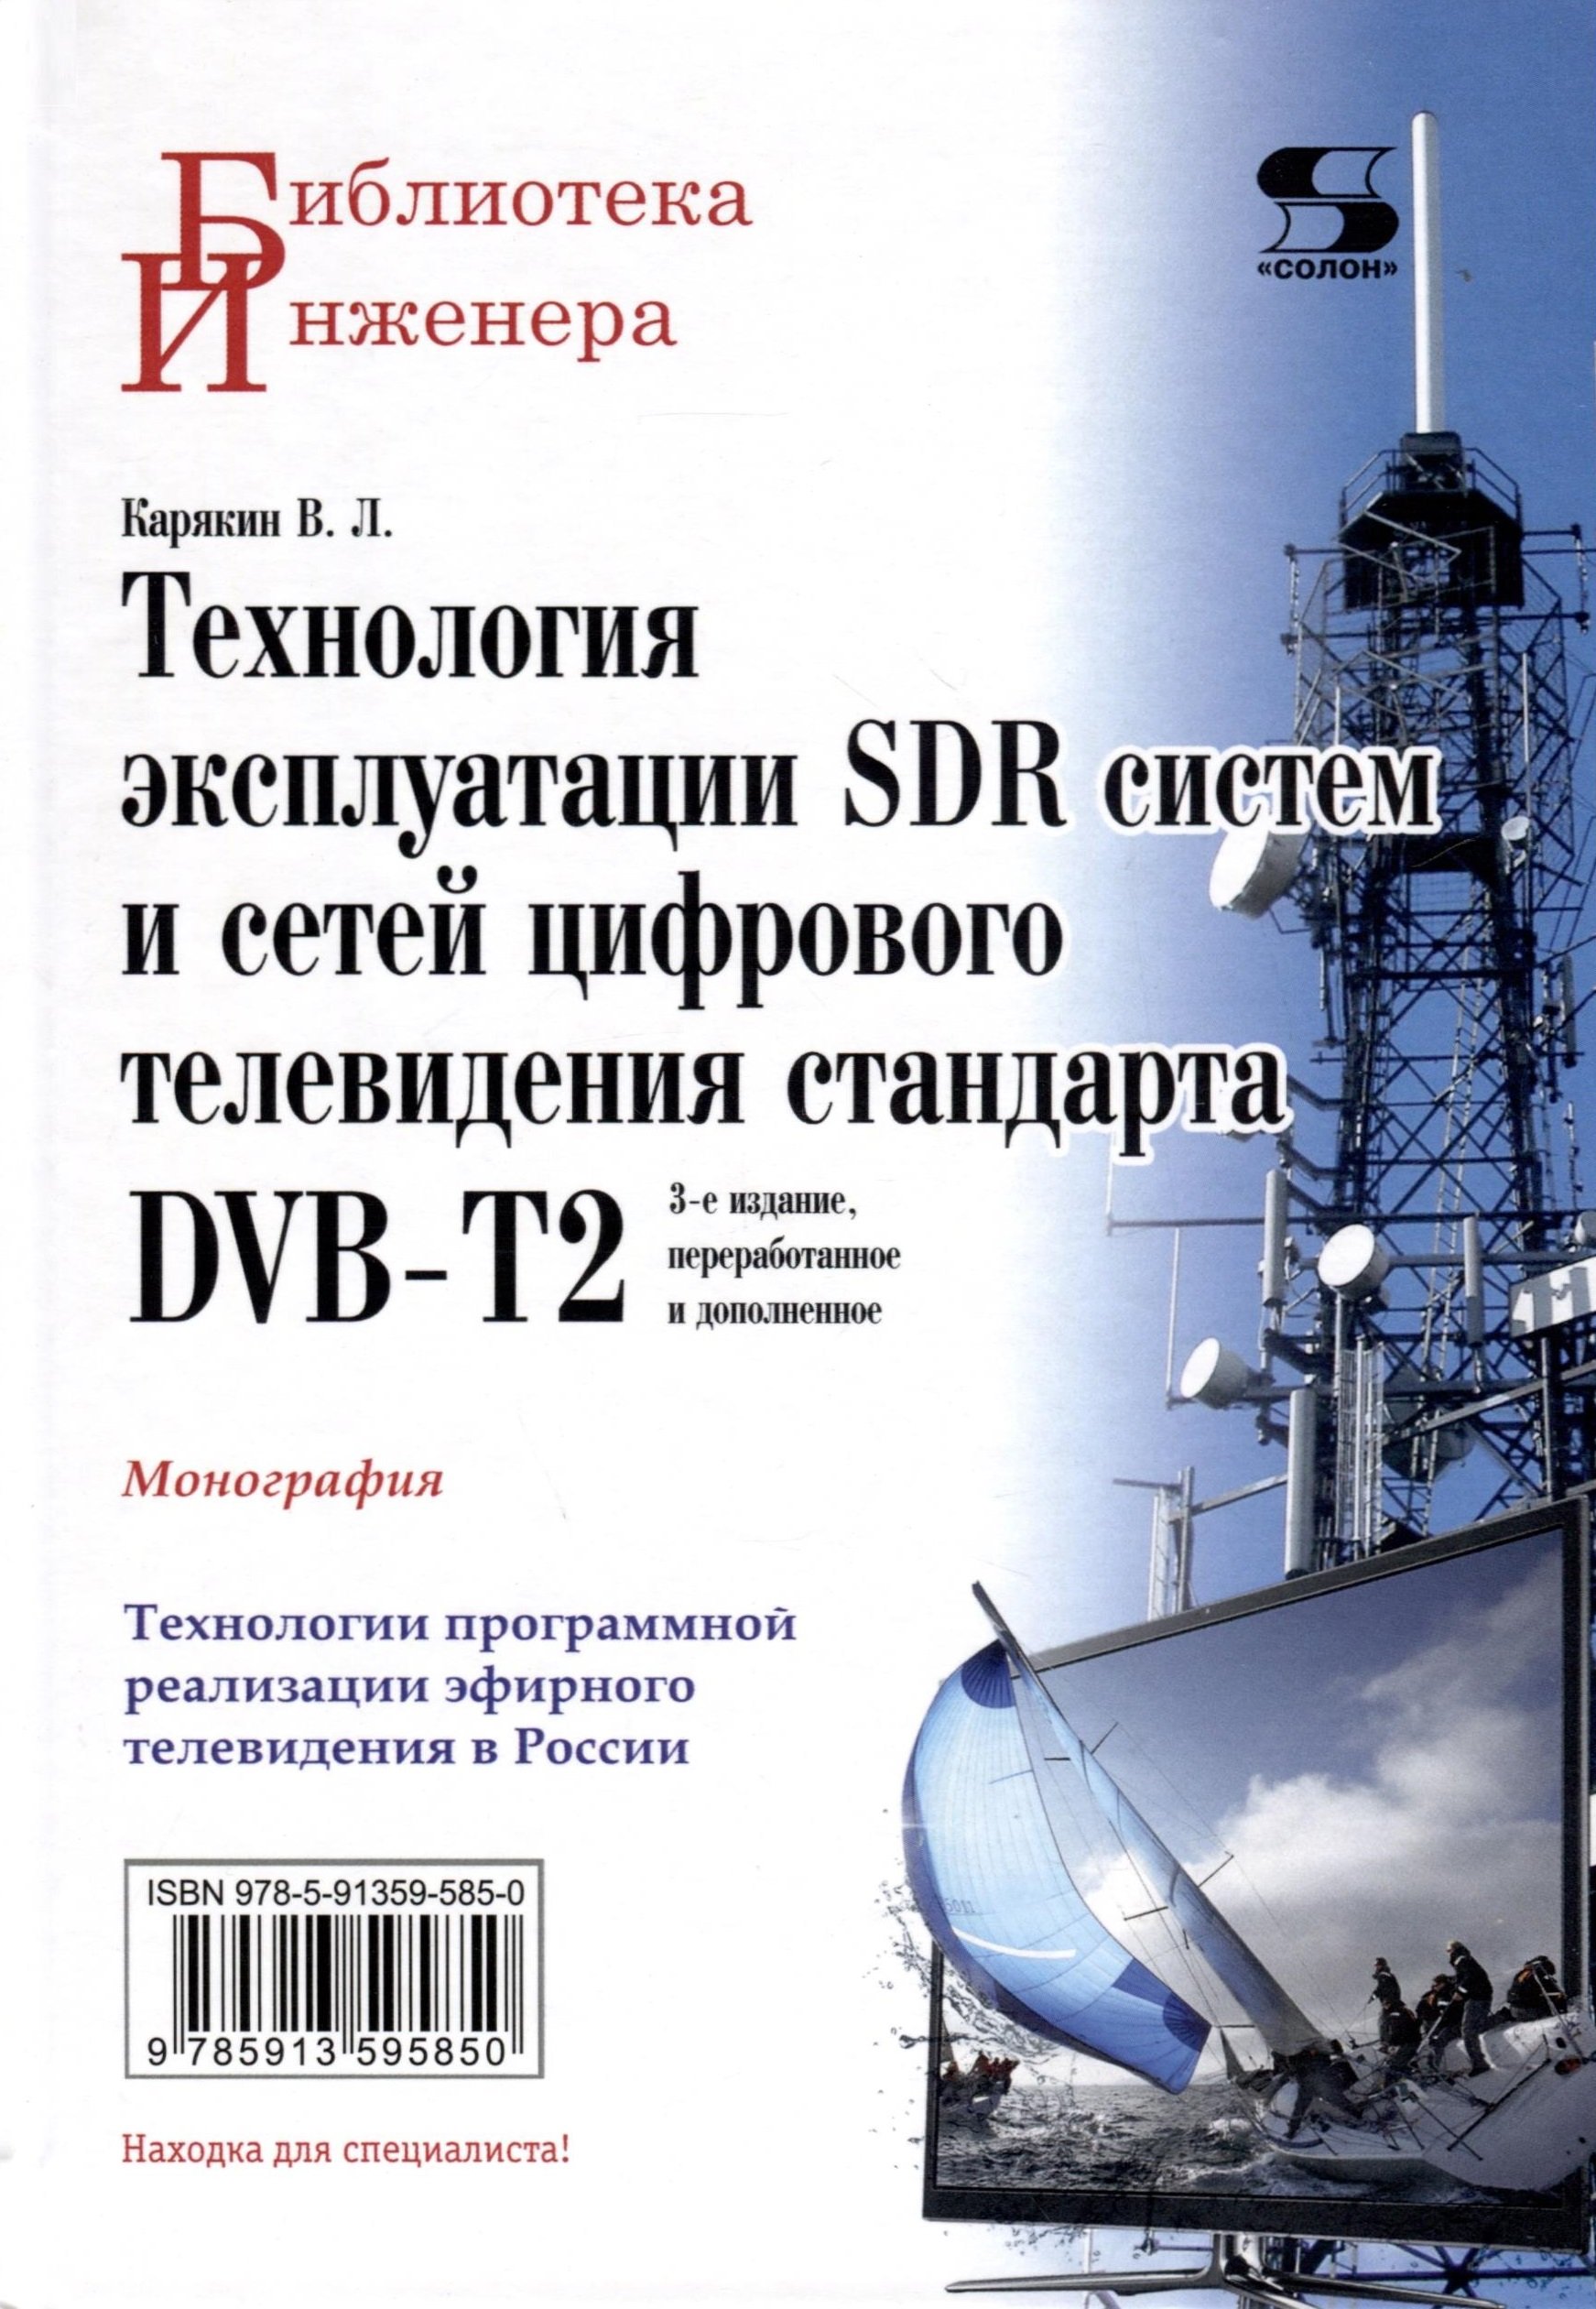   SDR       DVB-T2: , 3- 